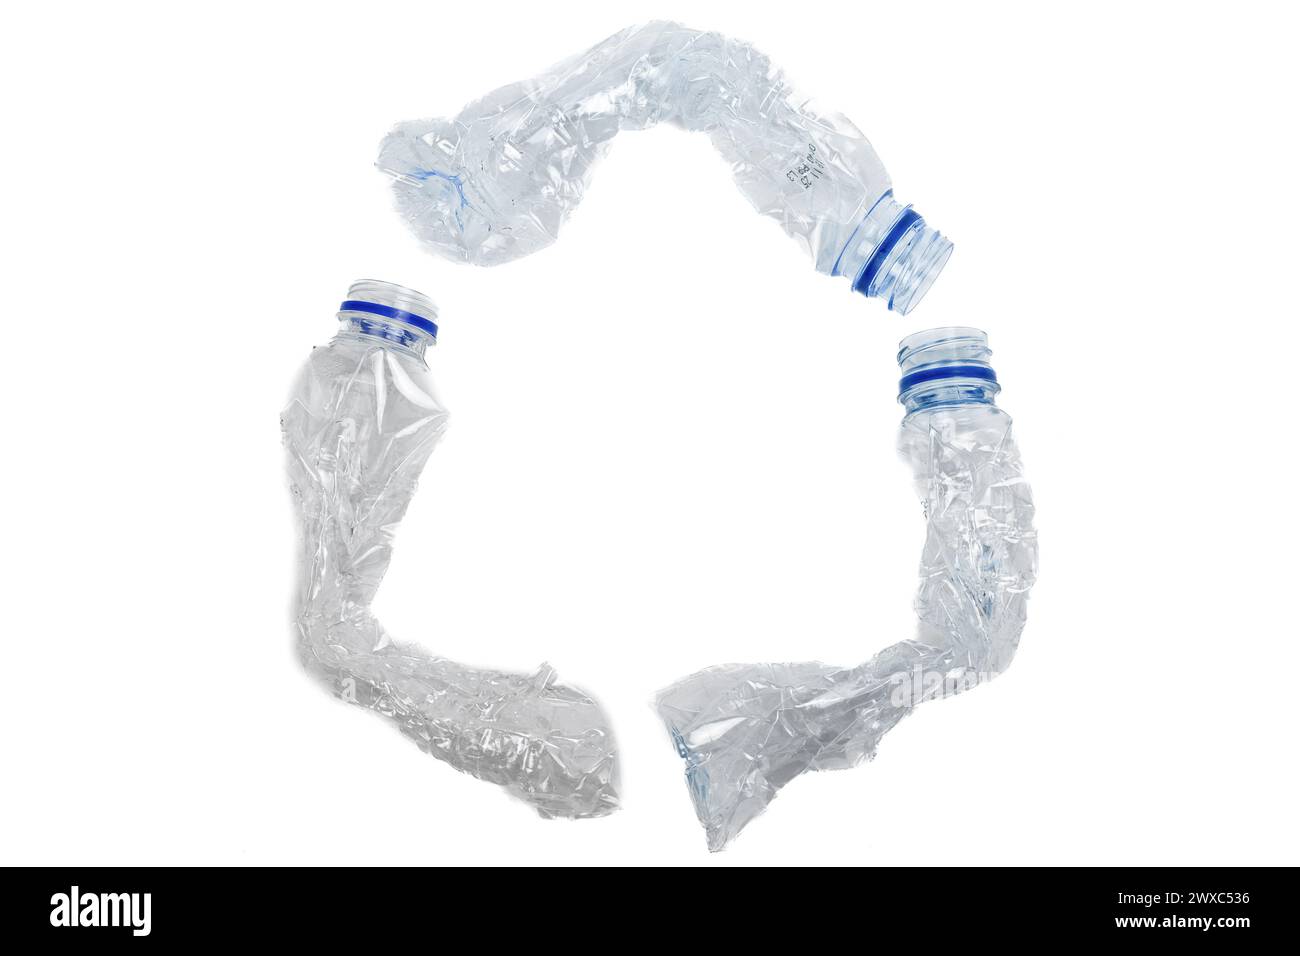 Recycling-Symbol aus gebrauchten Kunststoffflaschen, isoliert auf weißem Hintergrund Stockfoto